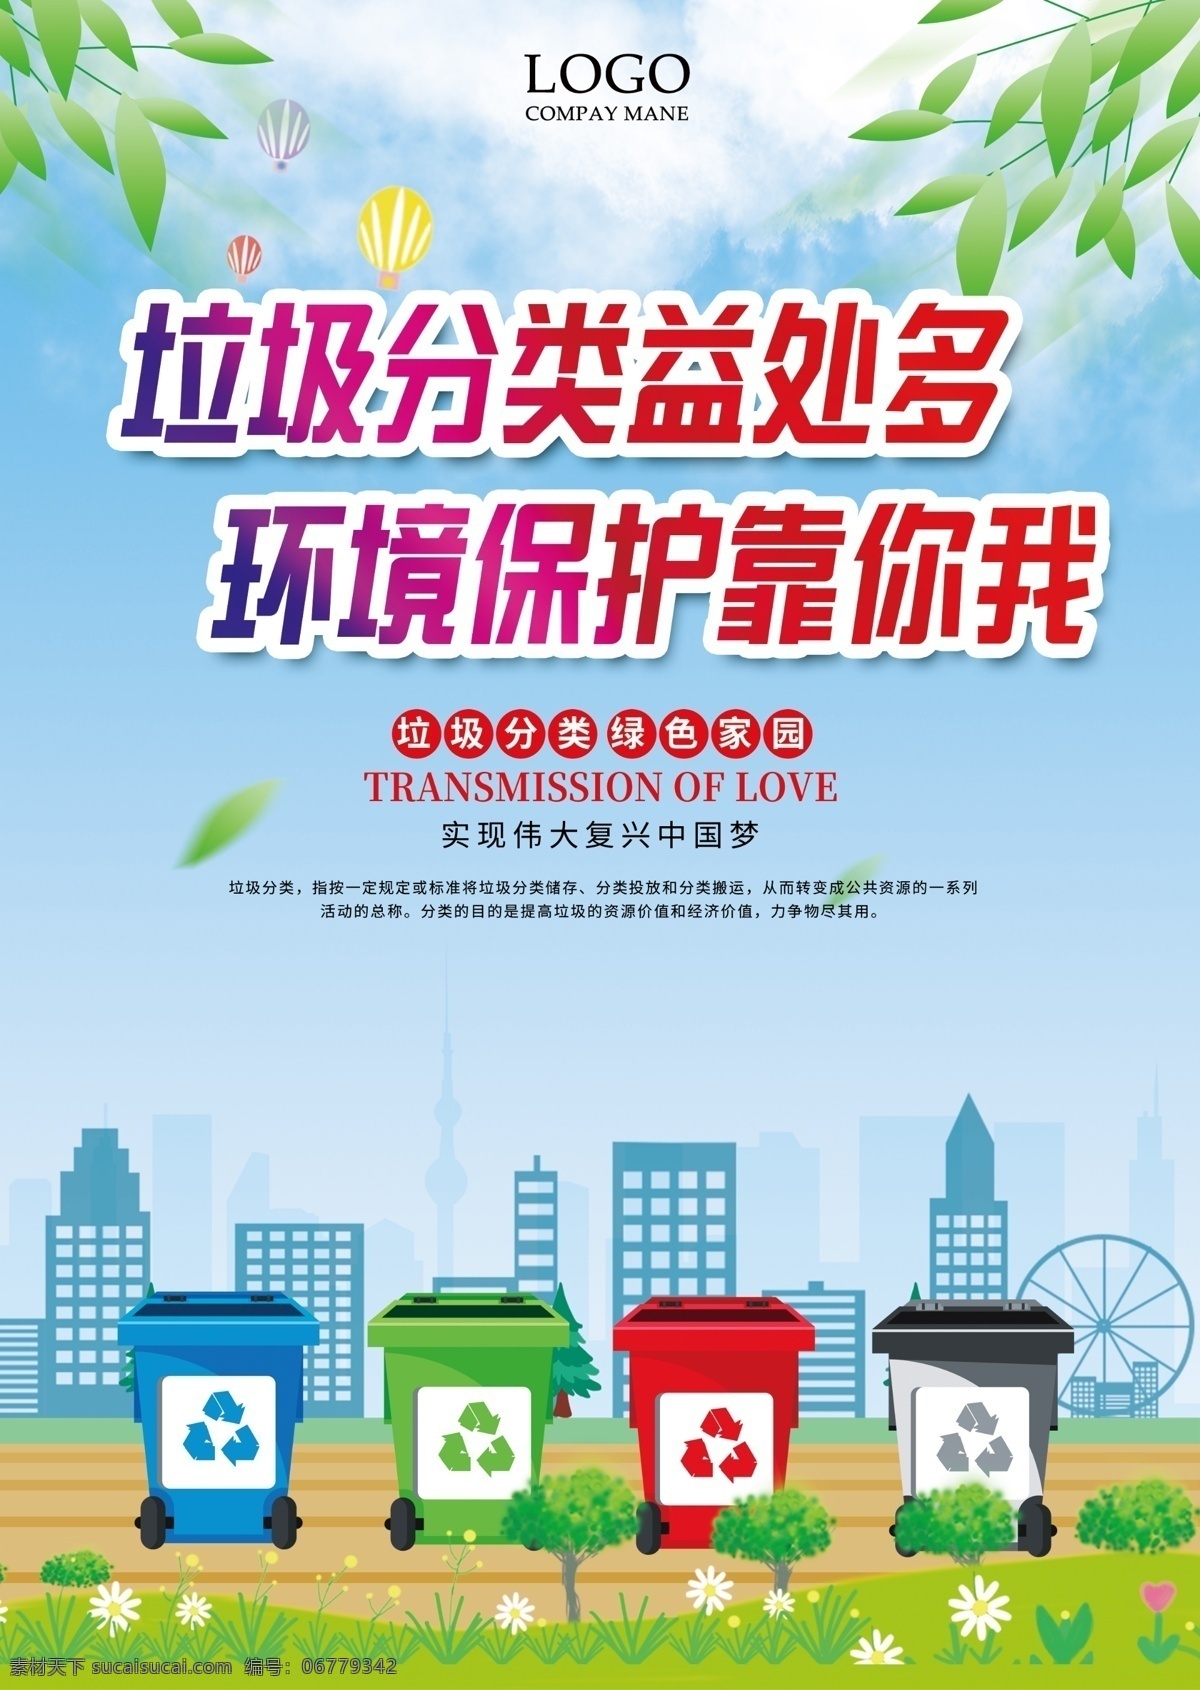 垃圾 分类 环境 宣传 精美 海报 垃圾分类 绿色生活 文明城市 精美海报